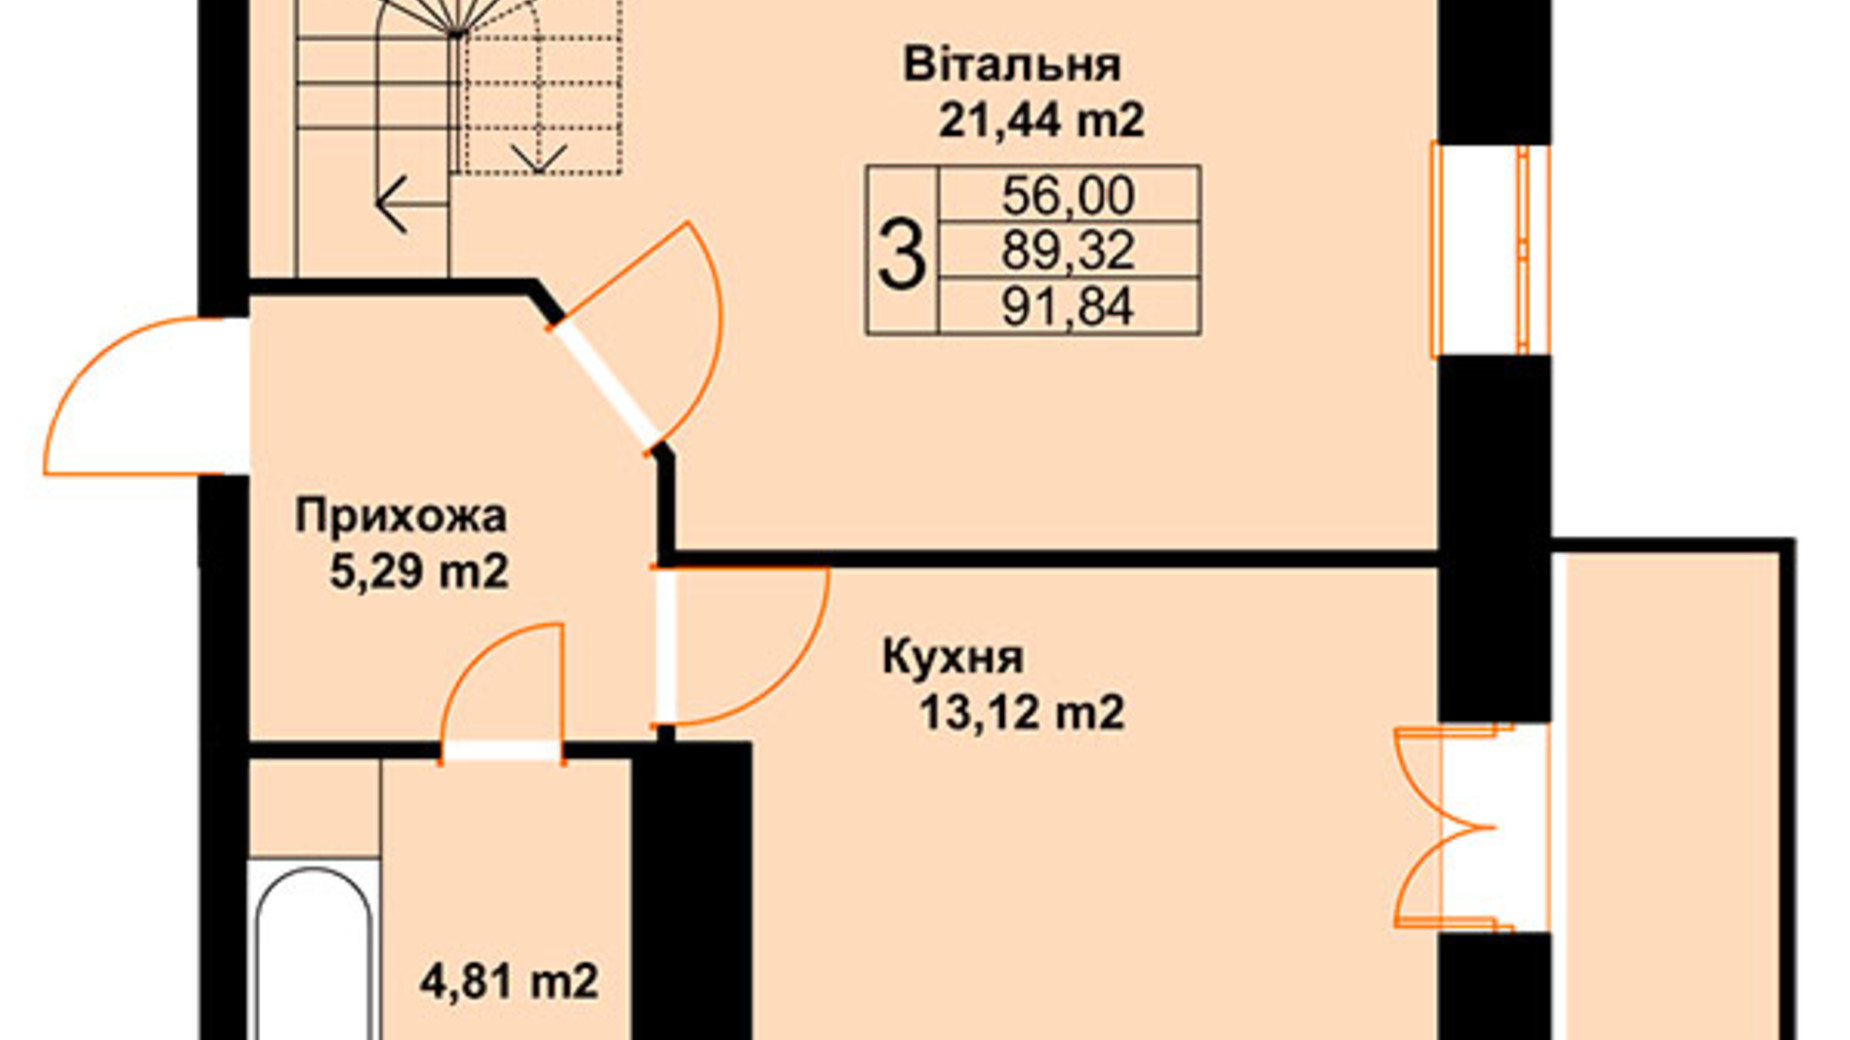 Планировка много­уровневой квартиры в ЖК Бавария 91.84 м², фото 485240